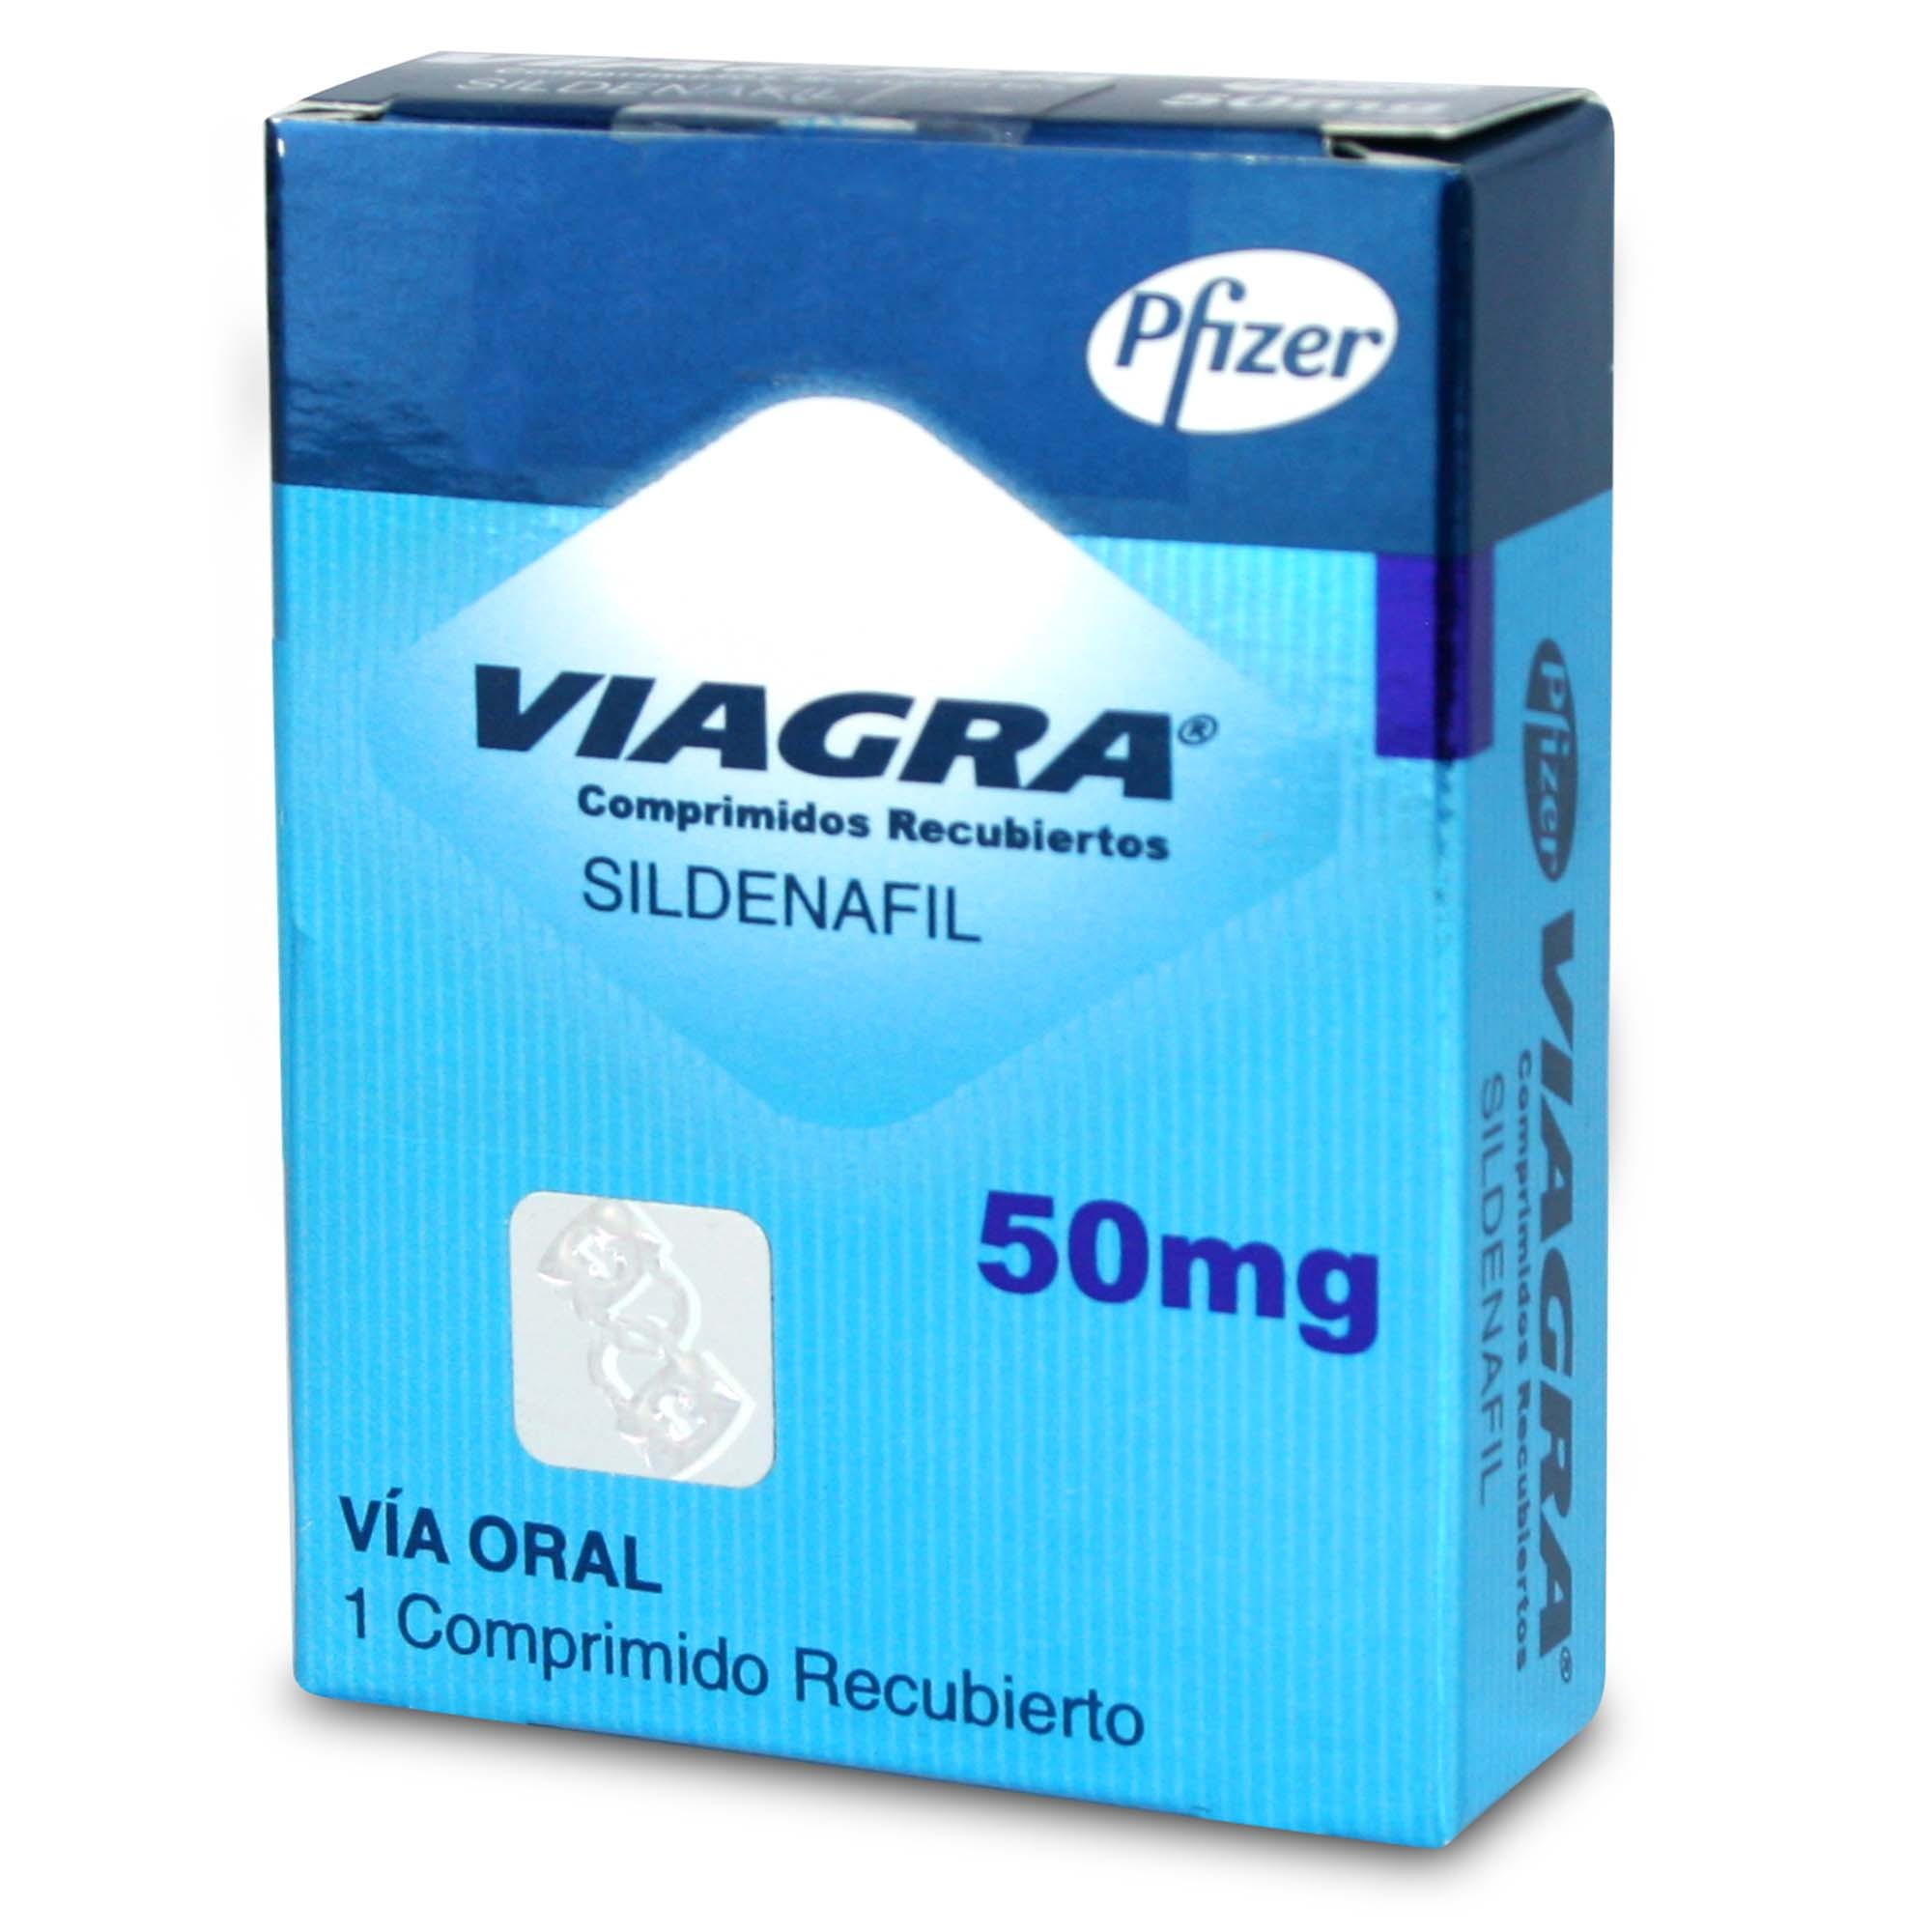 Viagra Sildenafil 50 mg 1 Comprimido Recubierto | Farmacias Cruz Verde